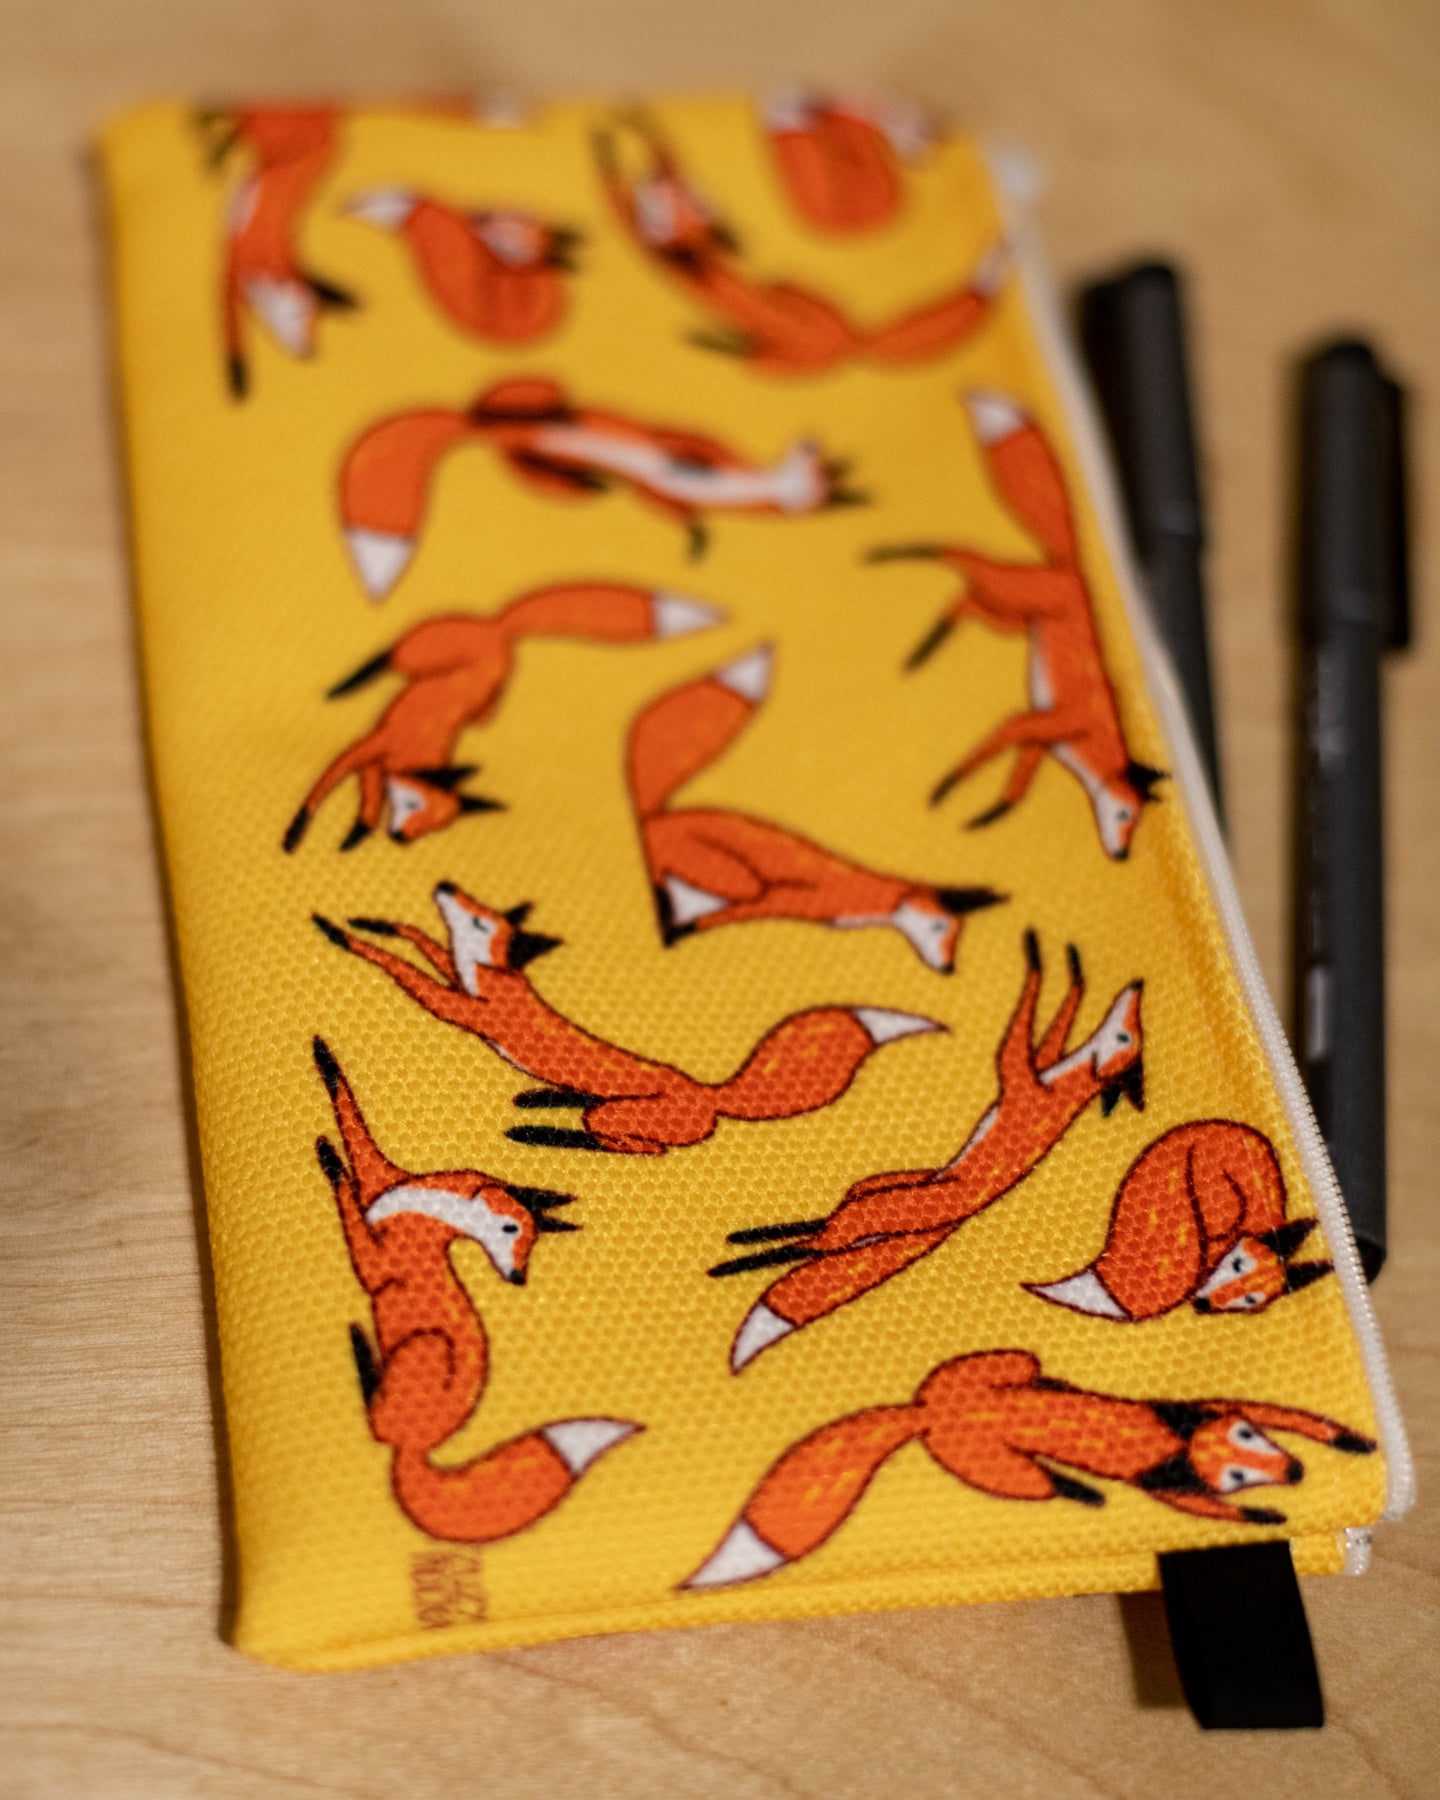 Foxes a Plenty Pencil Case - in studio